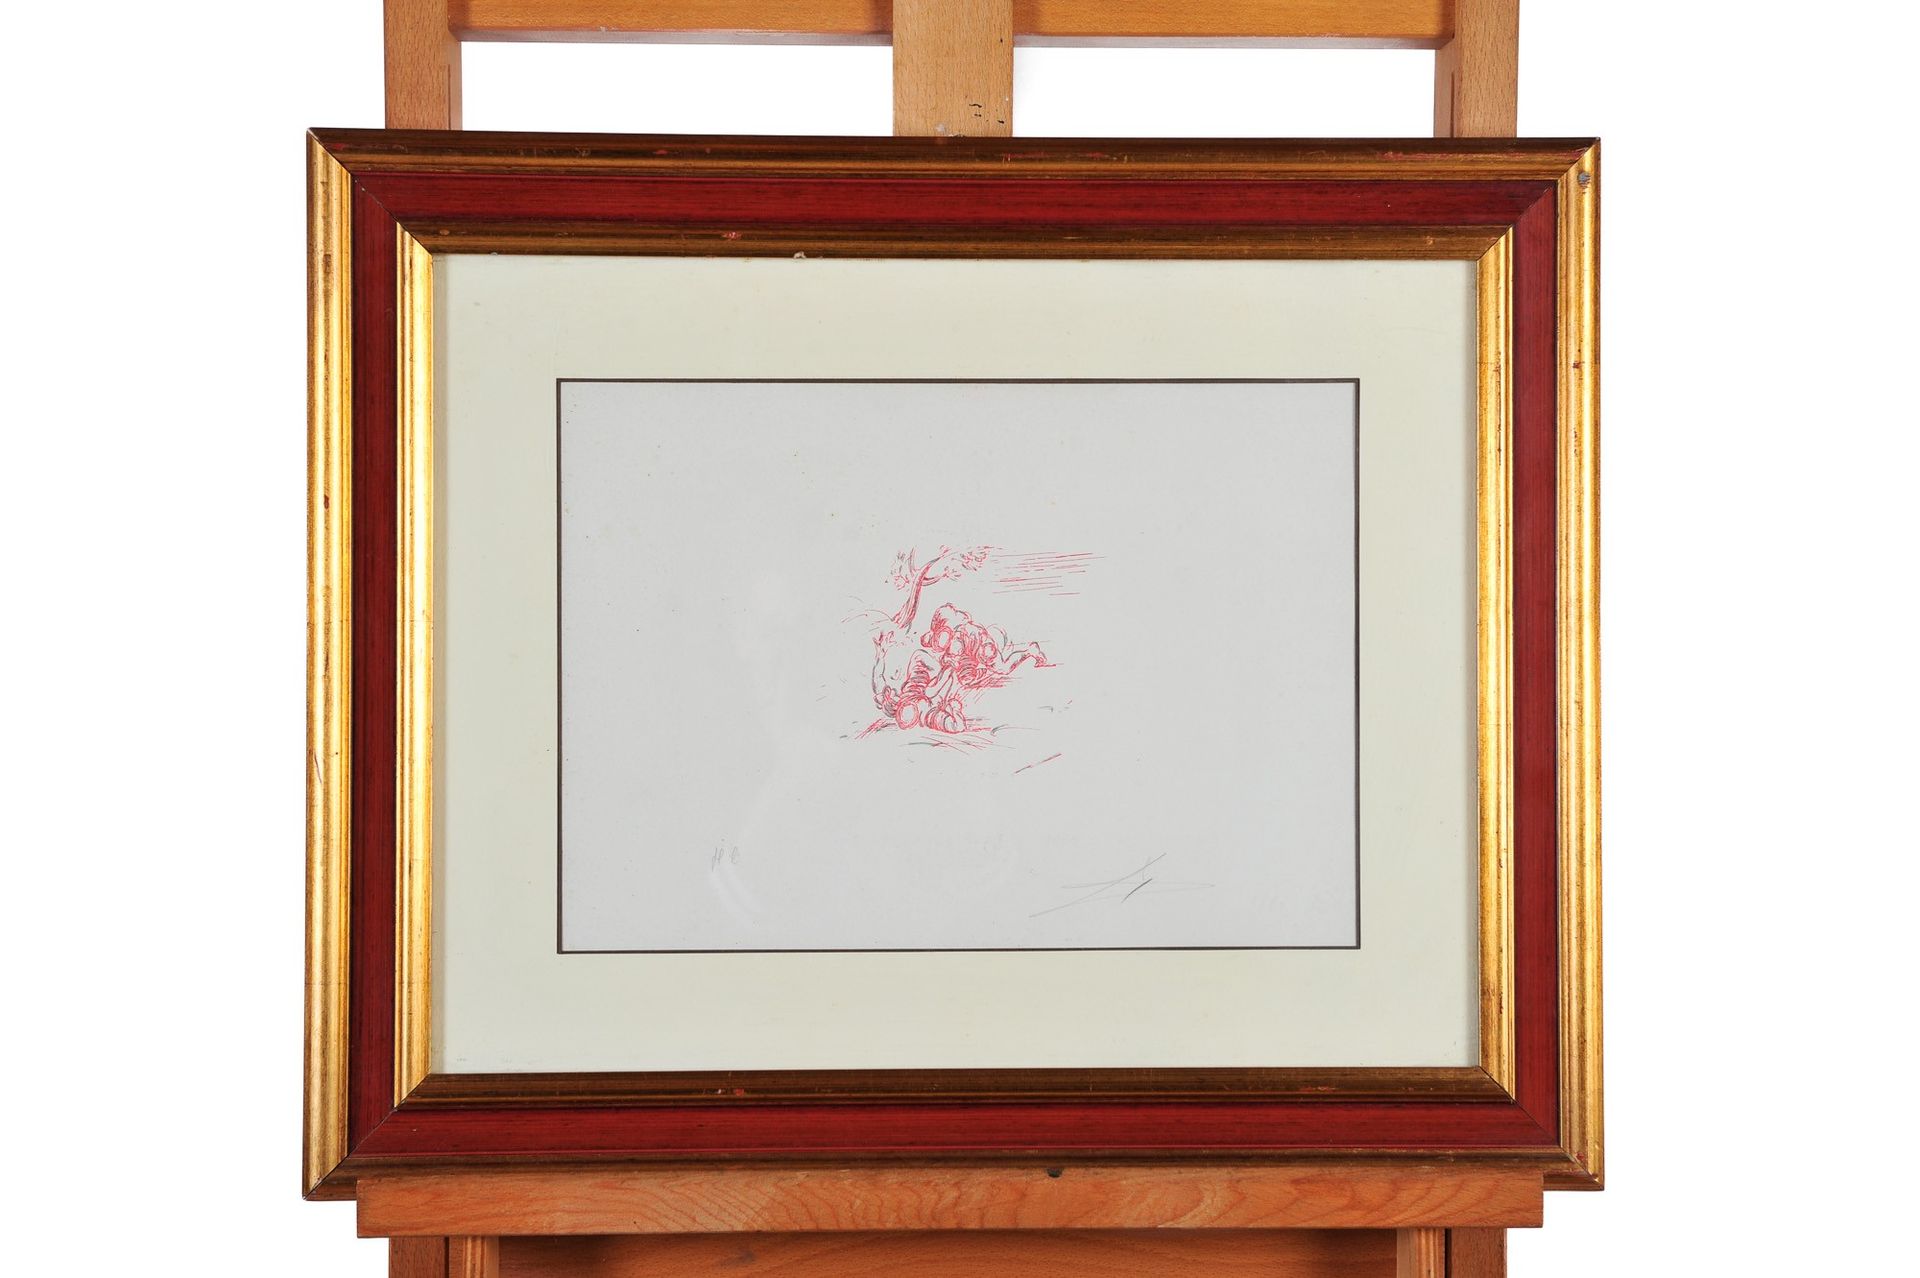 Salvador Dali - Wrestlers Litografía sobre papel 
25 x 34 cm
En cuadro.